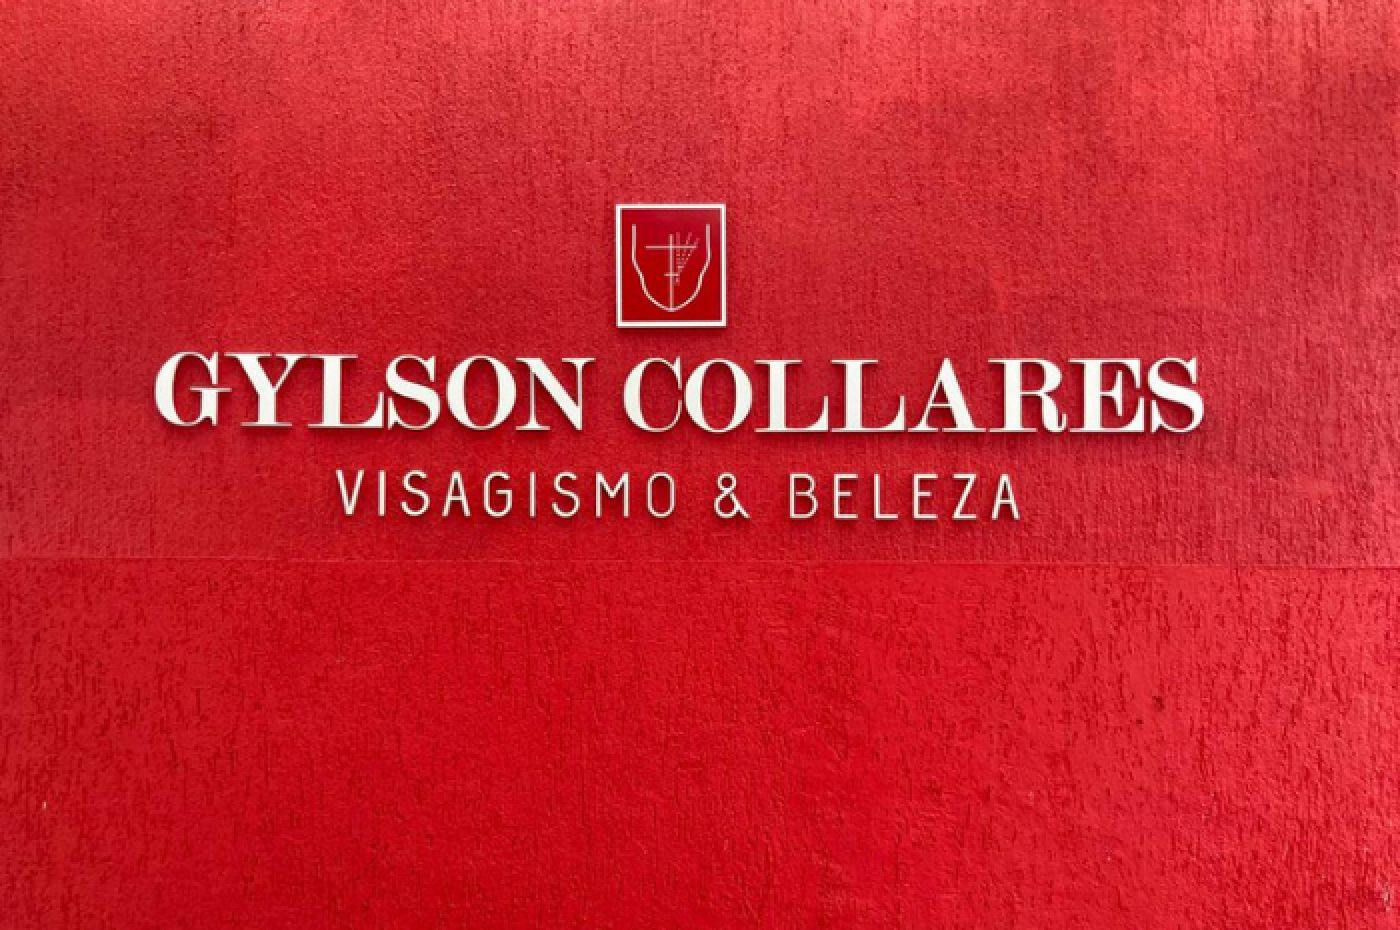 Gylson Collares